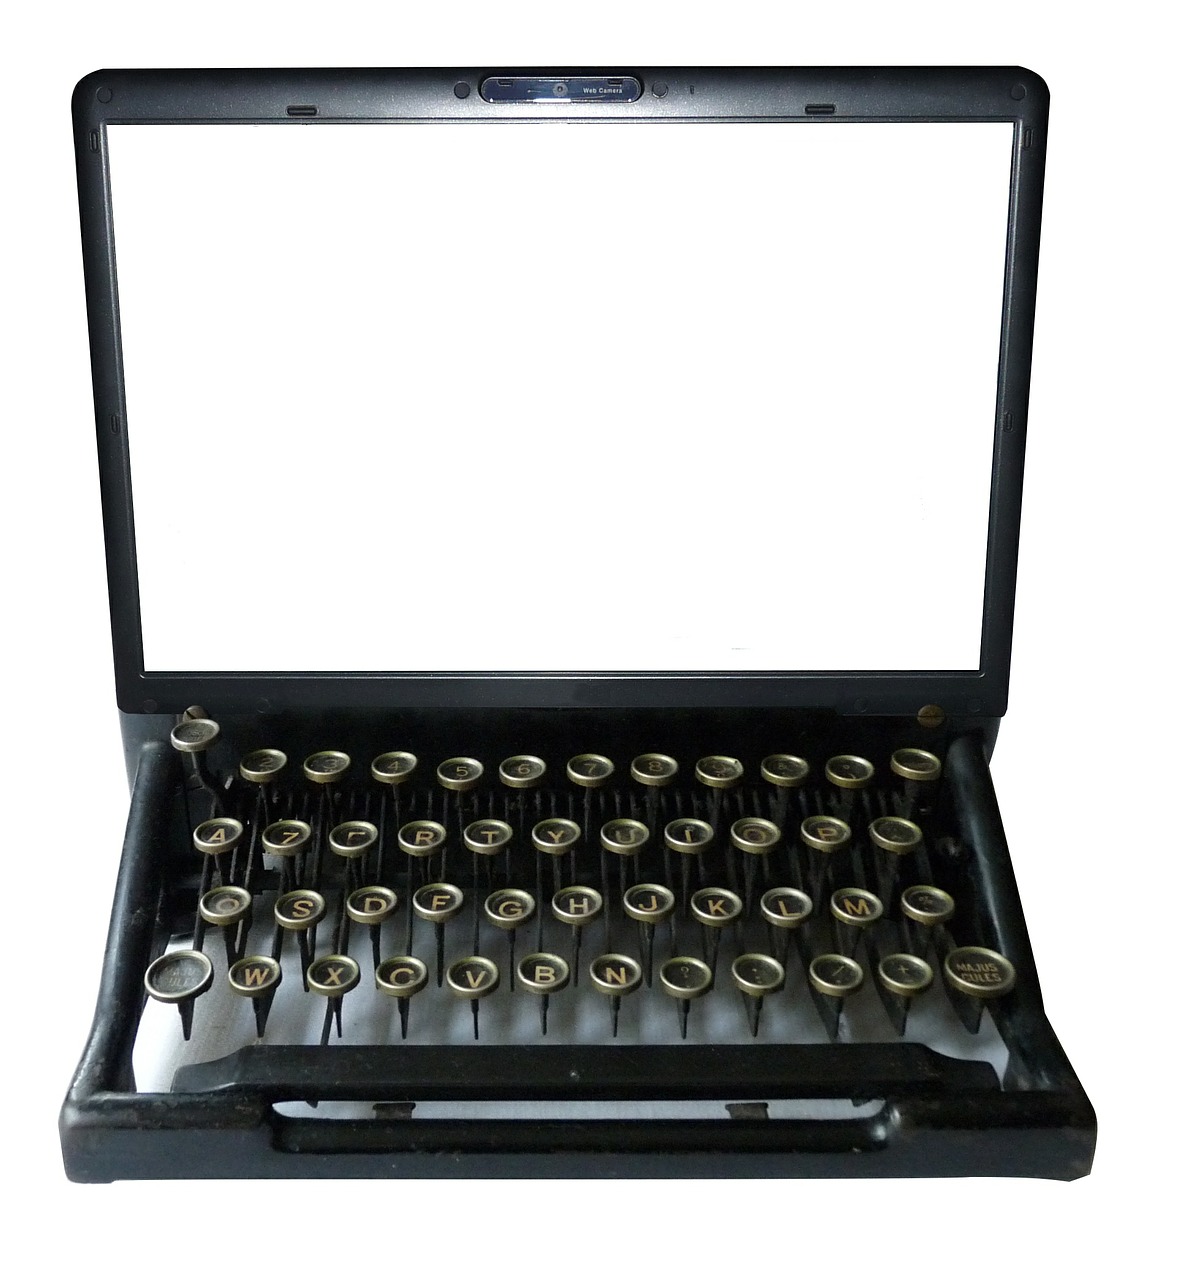 typewriter computer keyboard free photo